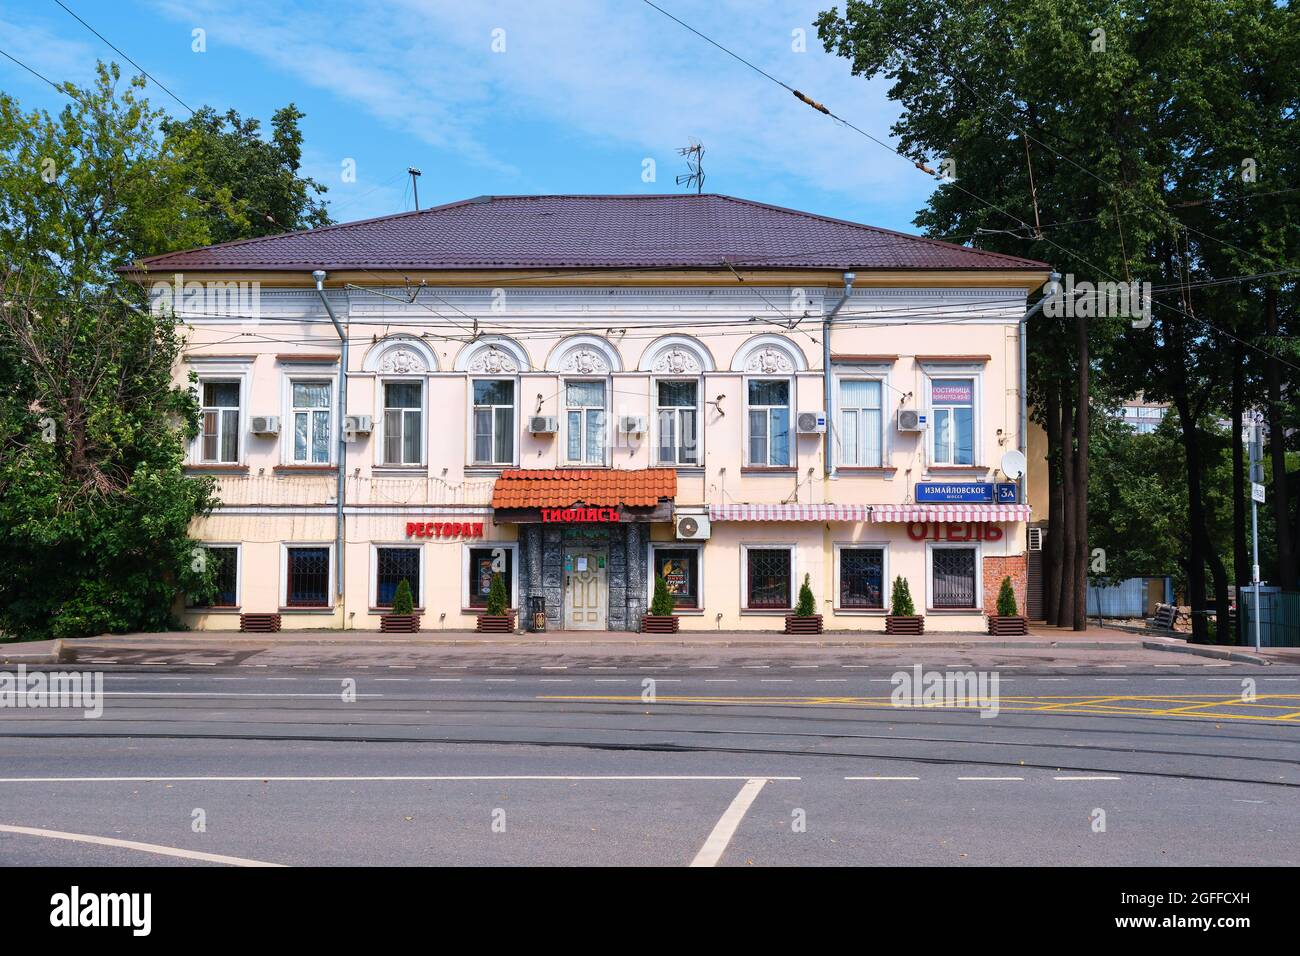 Un ancien bâtiment de deux étages datant de 1880 où se trouvent le restaurant et l'hôtel : Moscou, Russie - 15 août 2021 Banque D'Images